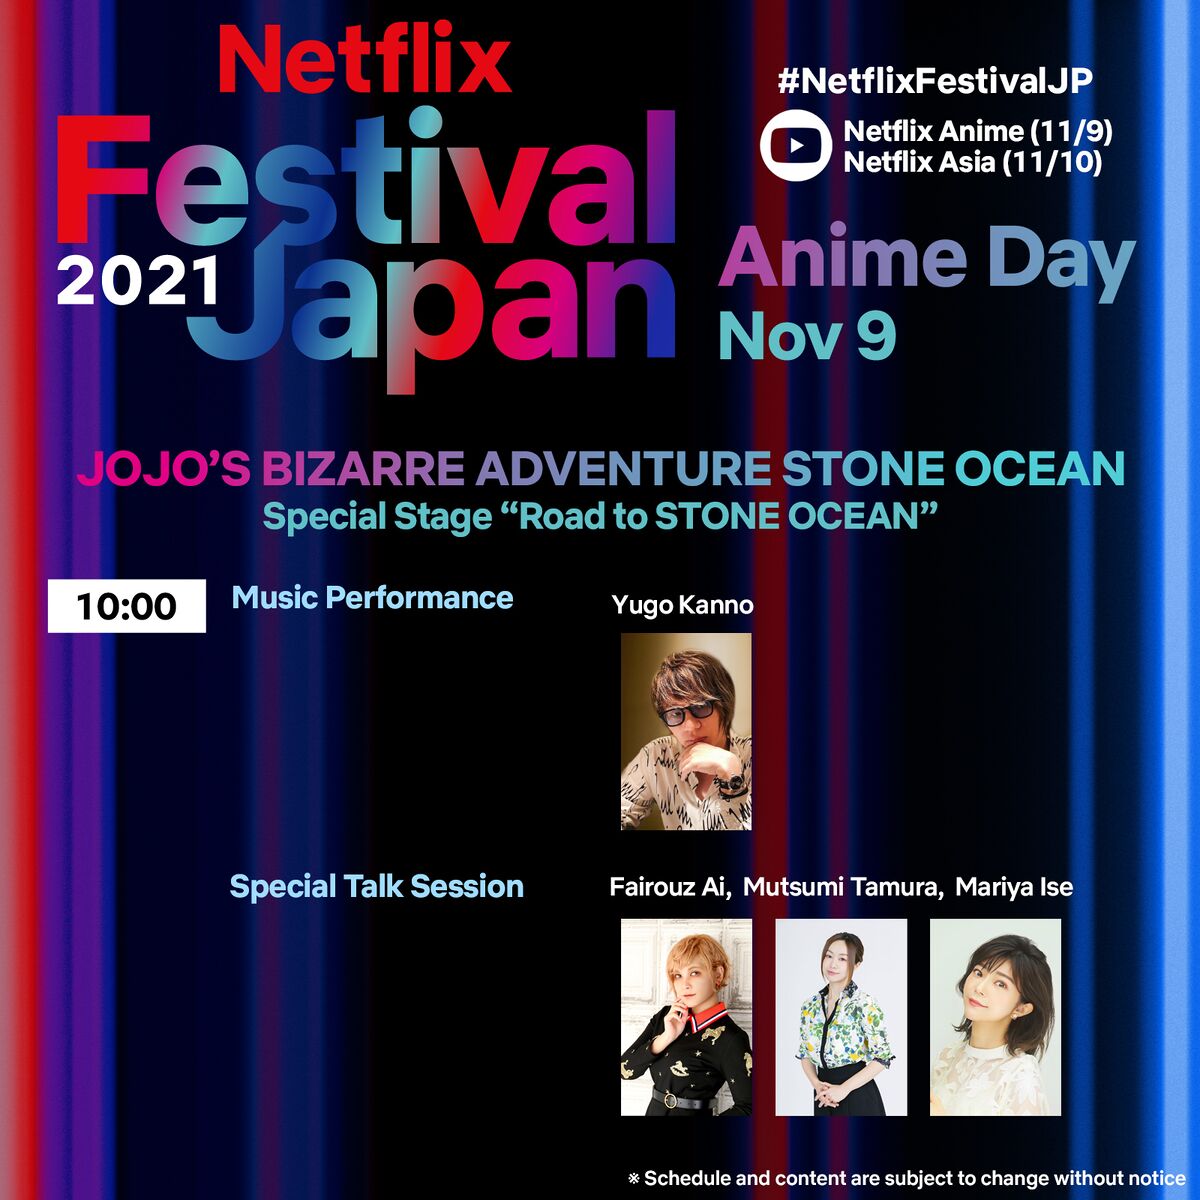 JoJo's Bizarre Adventure Stone Ocean Escape Room Will Appear in Japan